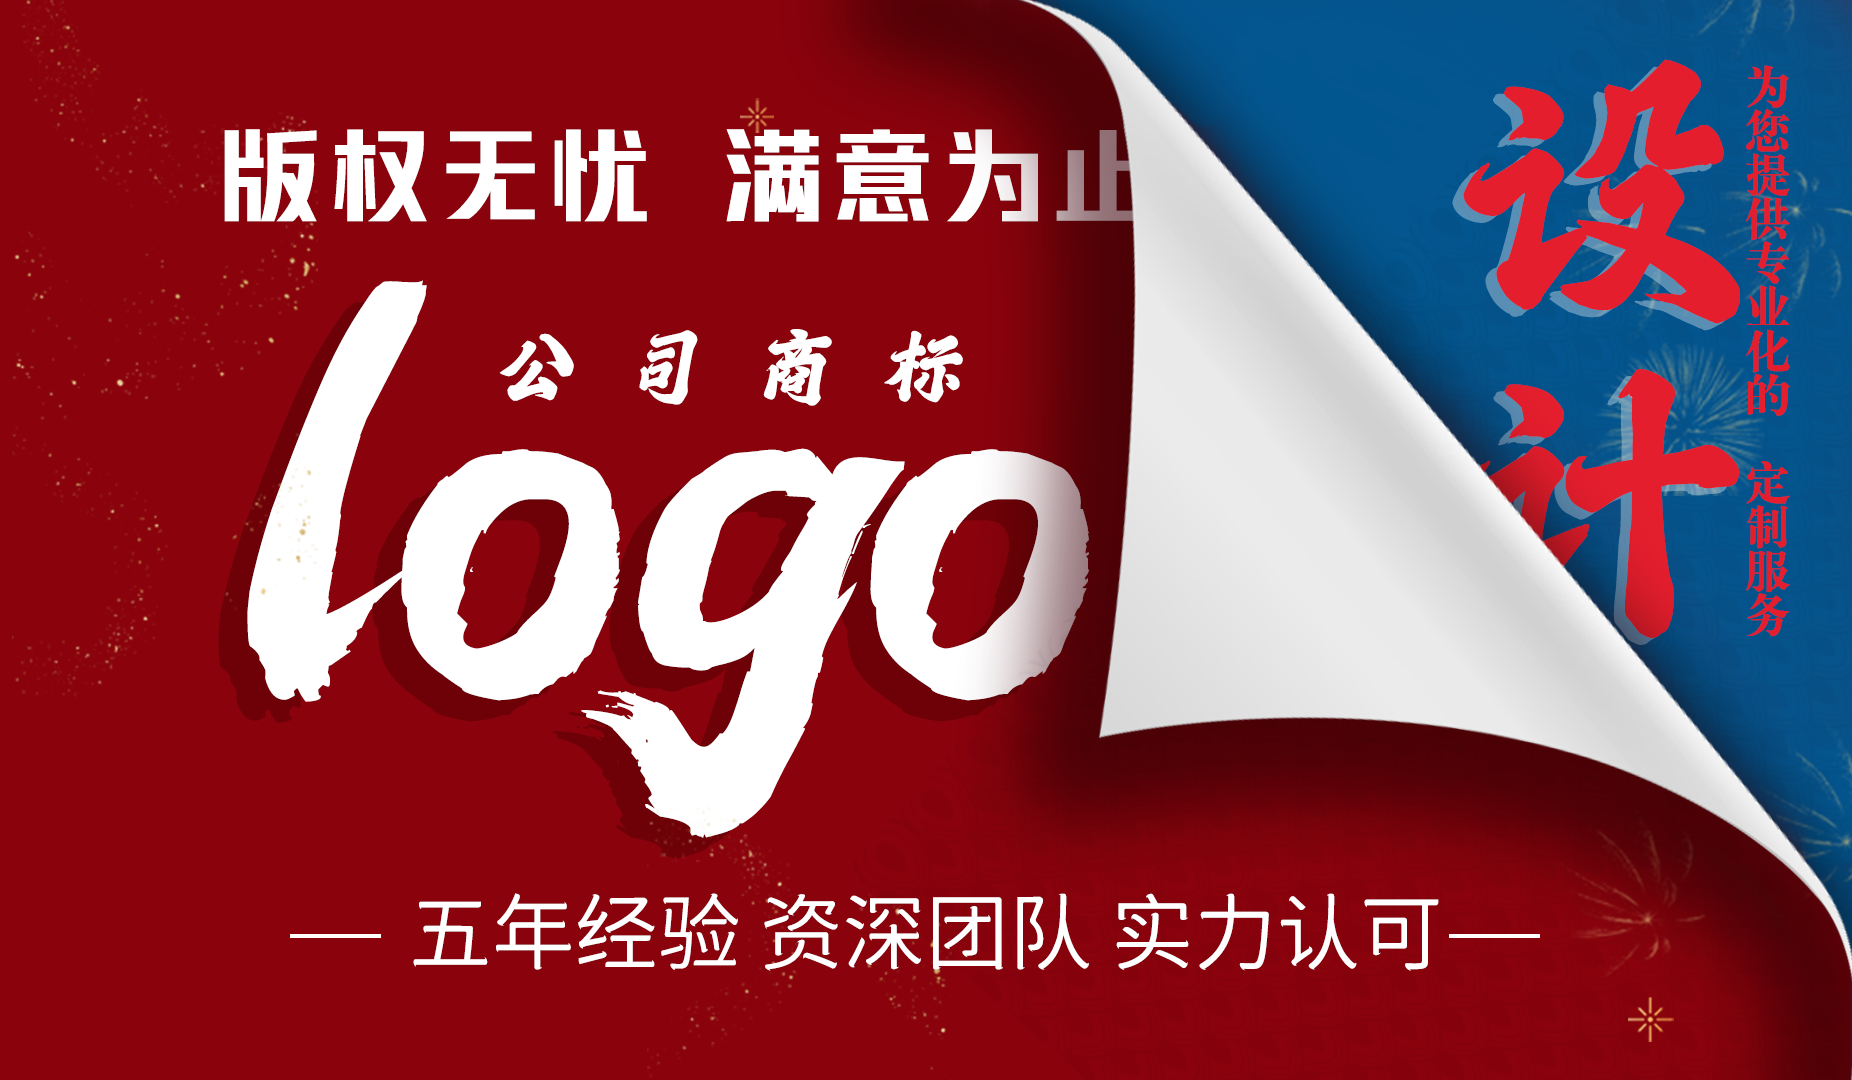 【LOGO设计】原创标识品牌企业餐饮图文标志字体设计